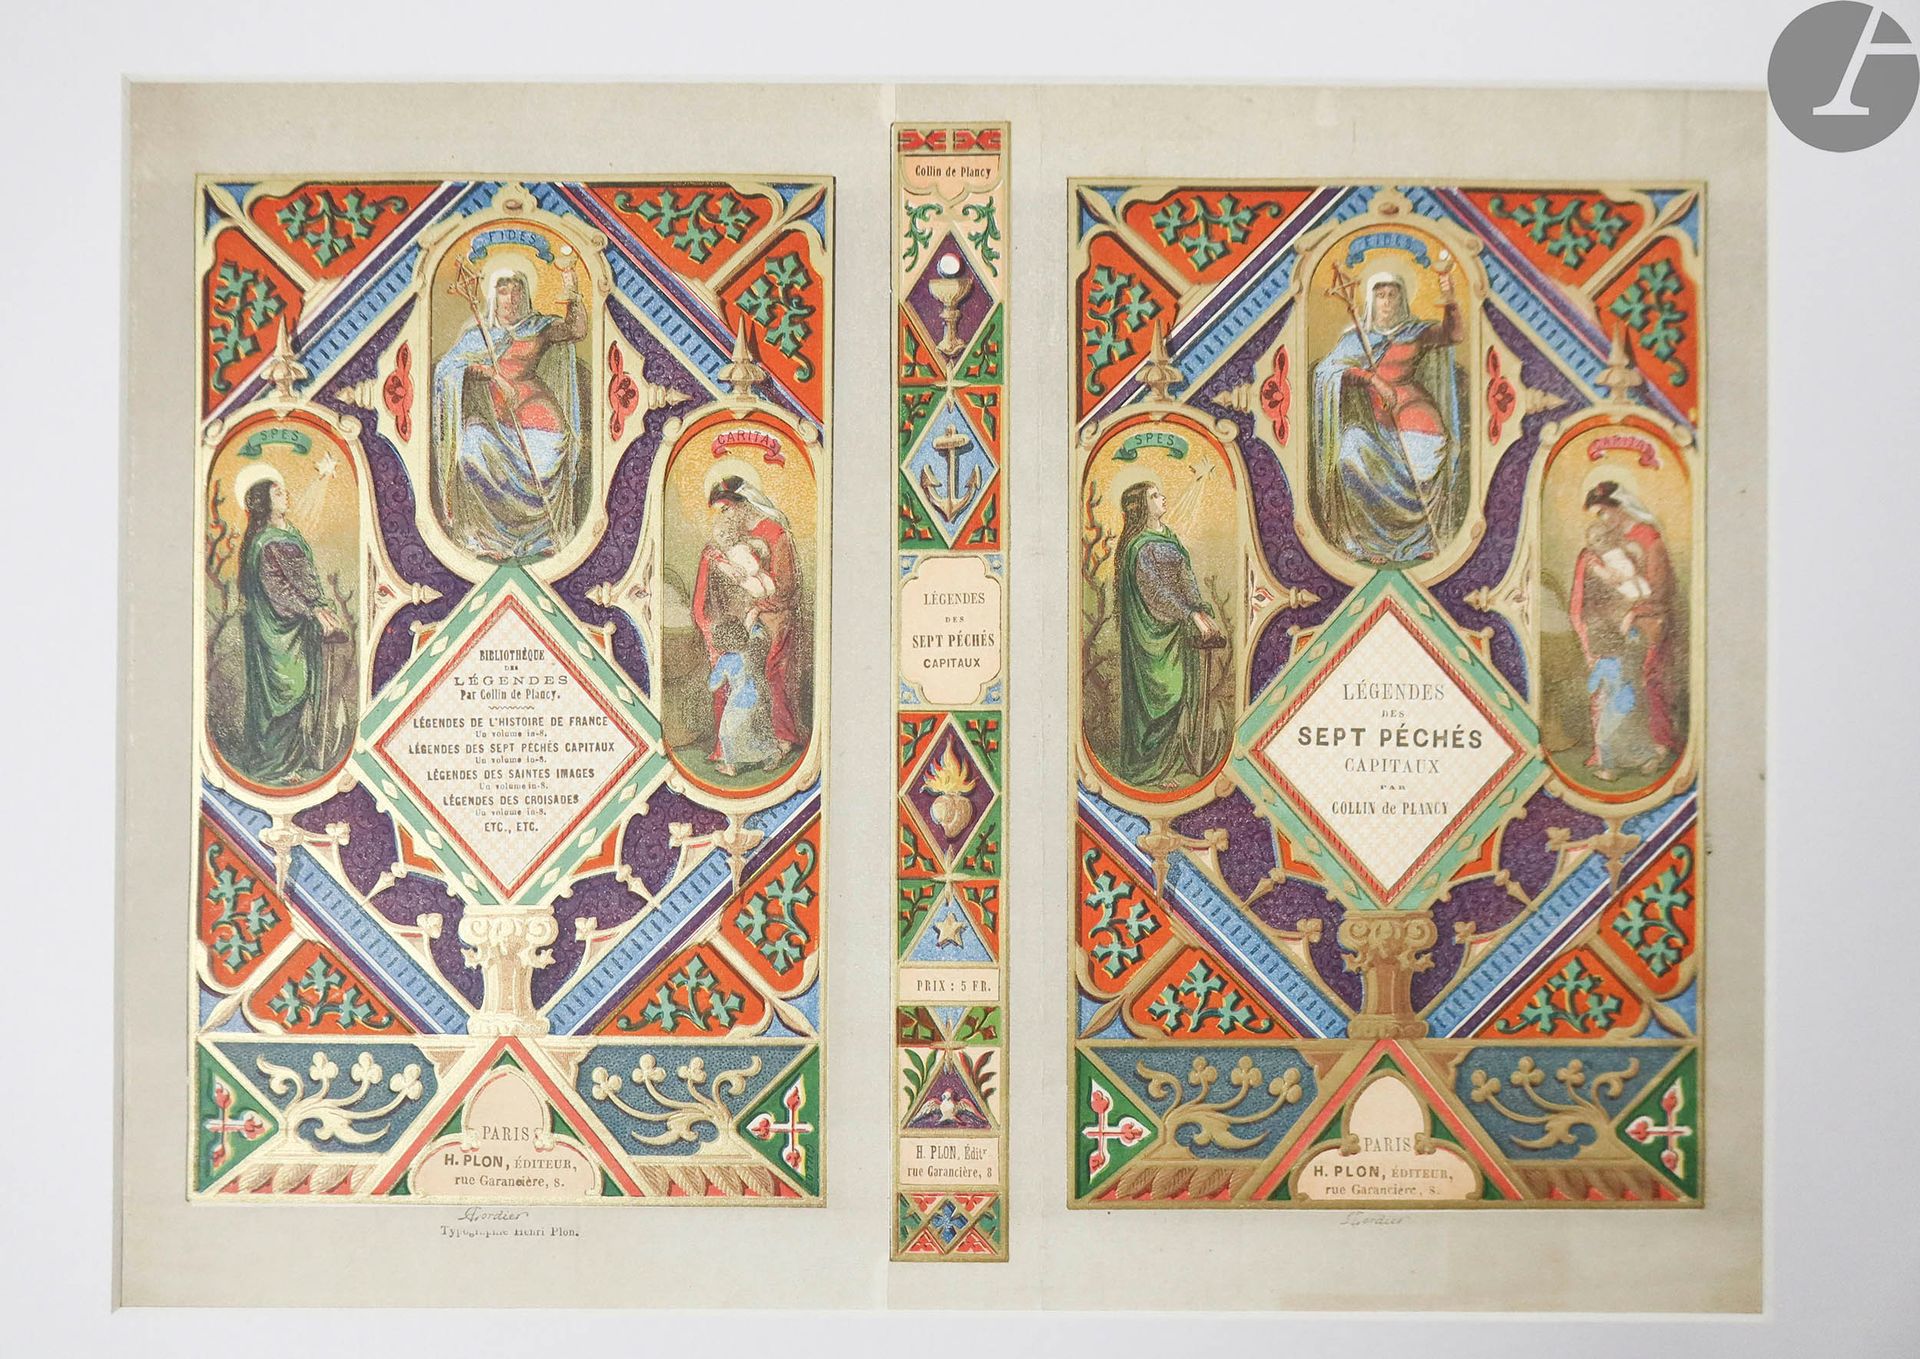 Null [COVERS].
一套重要的19世纪书籍封面。

一共有24个不同的彩色封面，都有垫子。

其中包括：
维克多-亚当的 "Cent jours de&hellip;